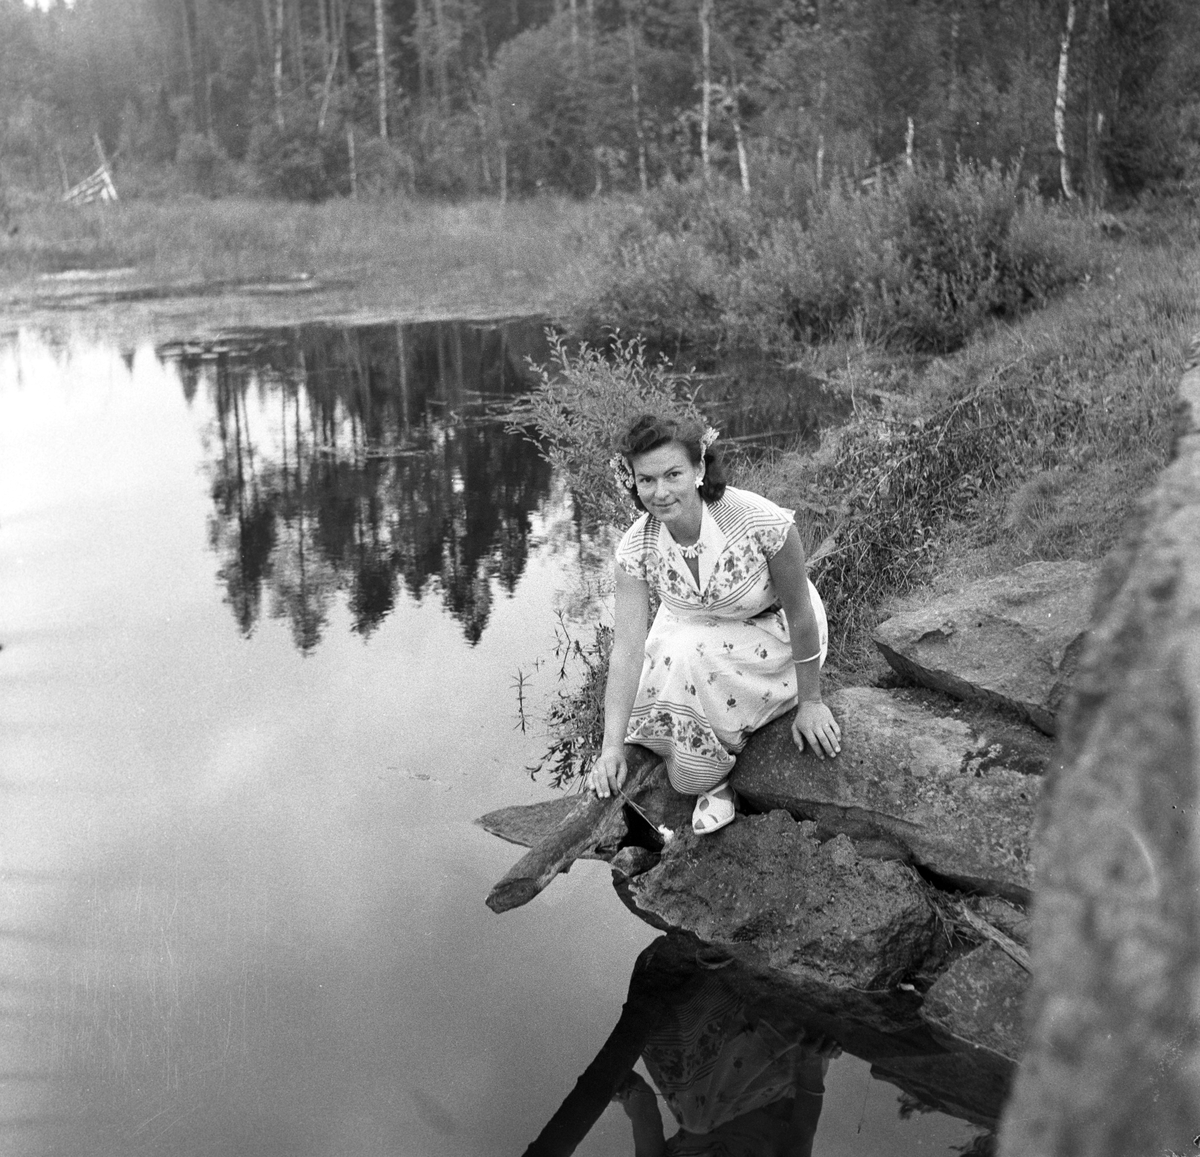 Serie. Fra lokalpremiere på filmen "Finnskog og trollskap". Fotografert  august 1956.

